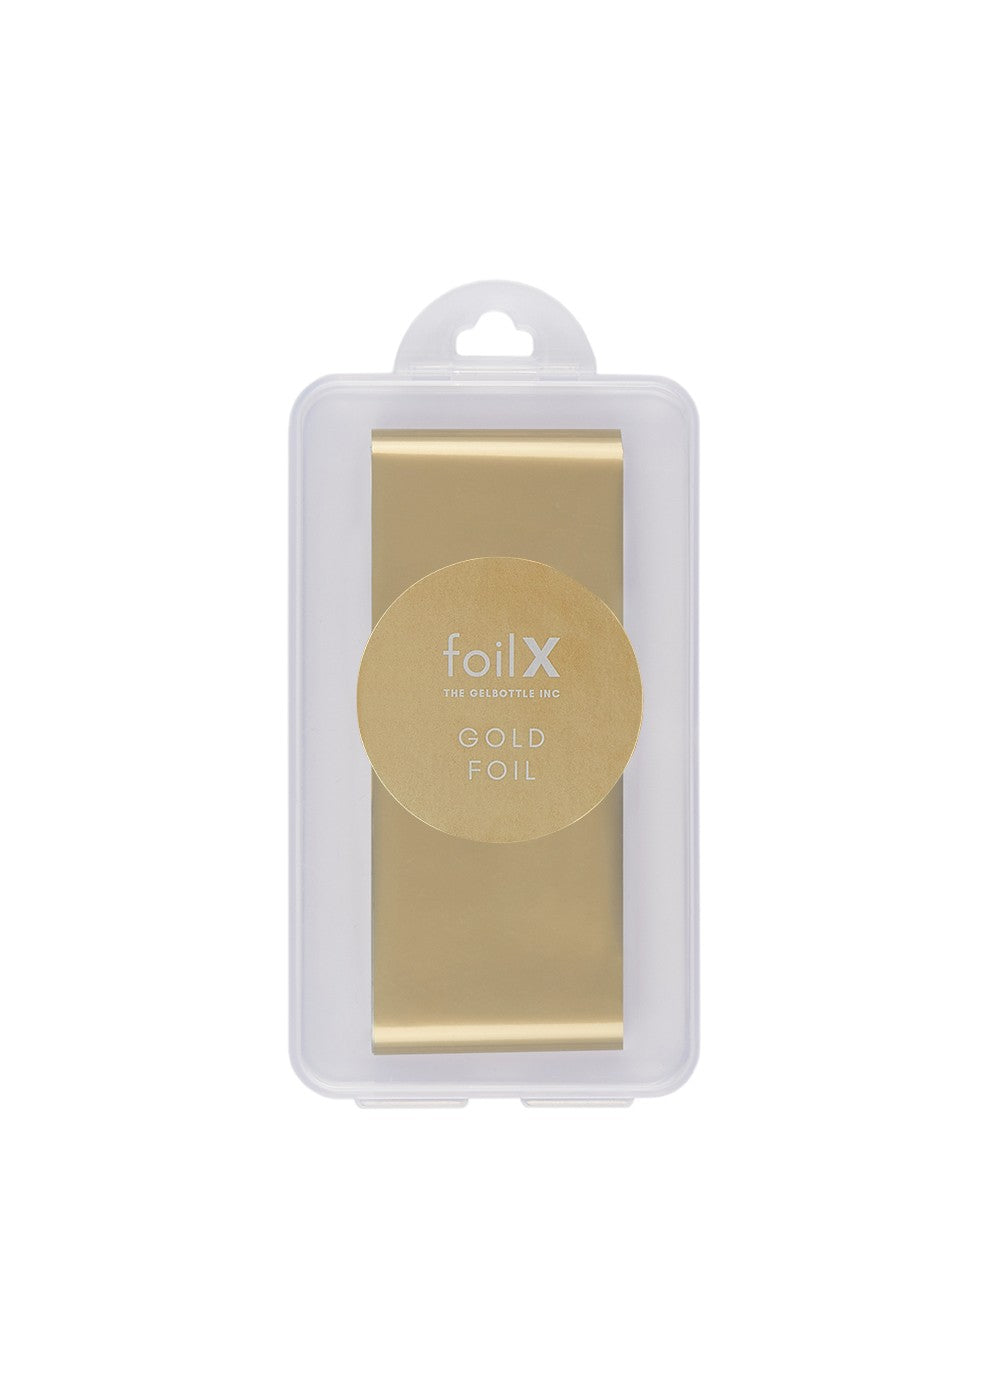 FoilX Gold Foil